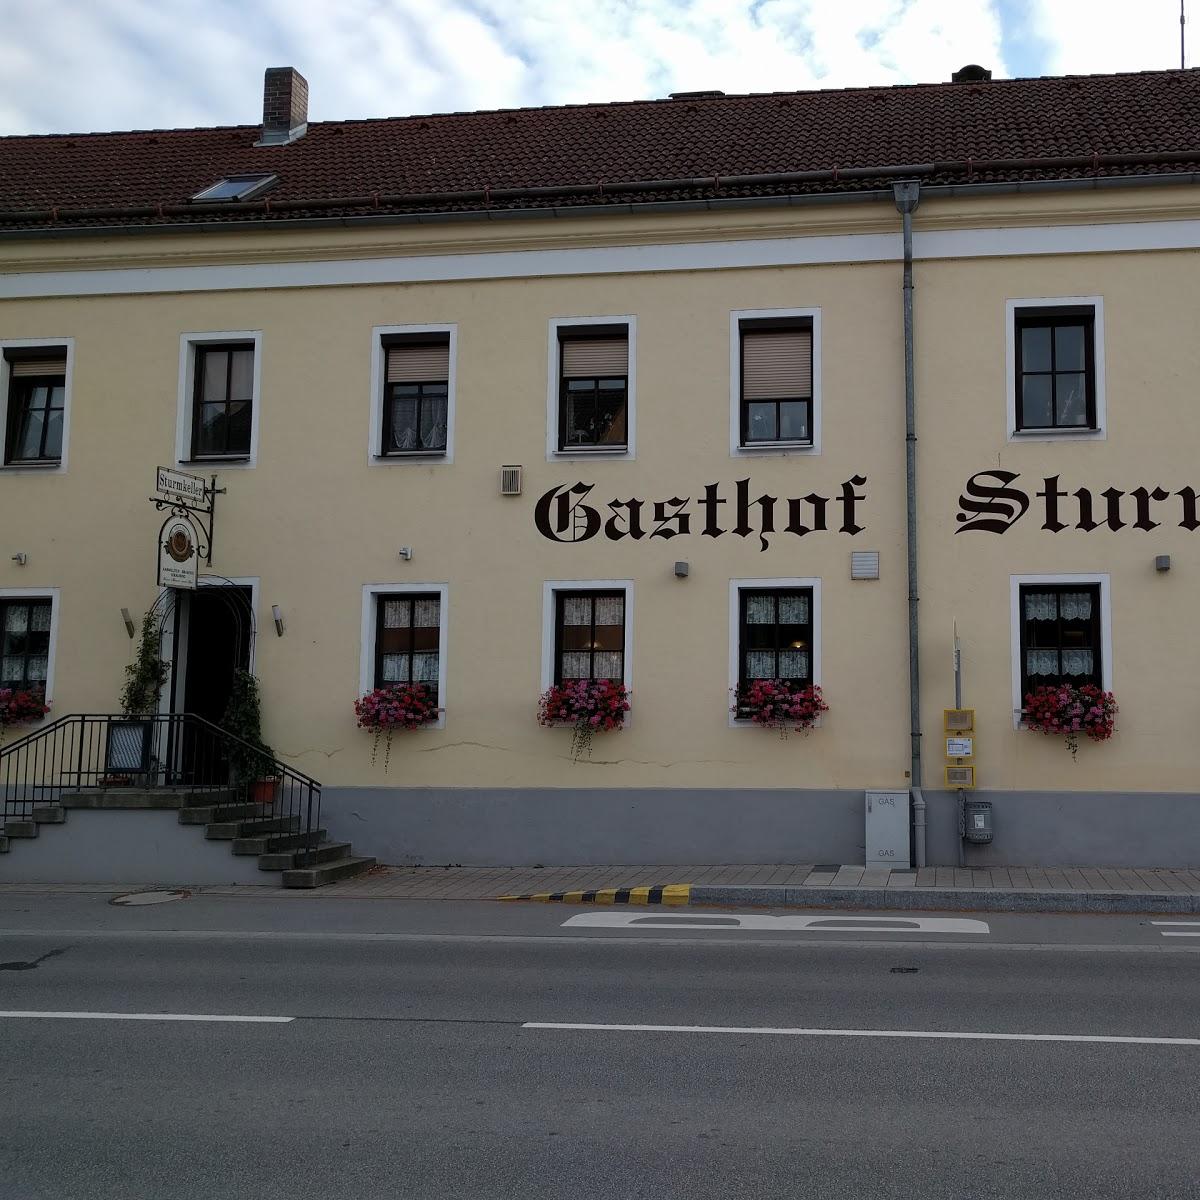 Restaurant "Gasthof Sturmkeller" in  Straubing